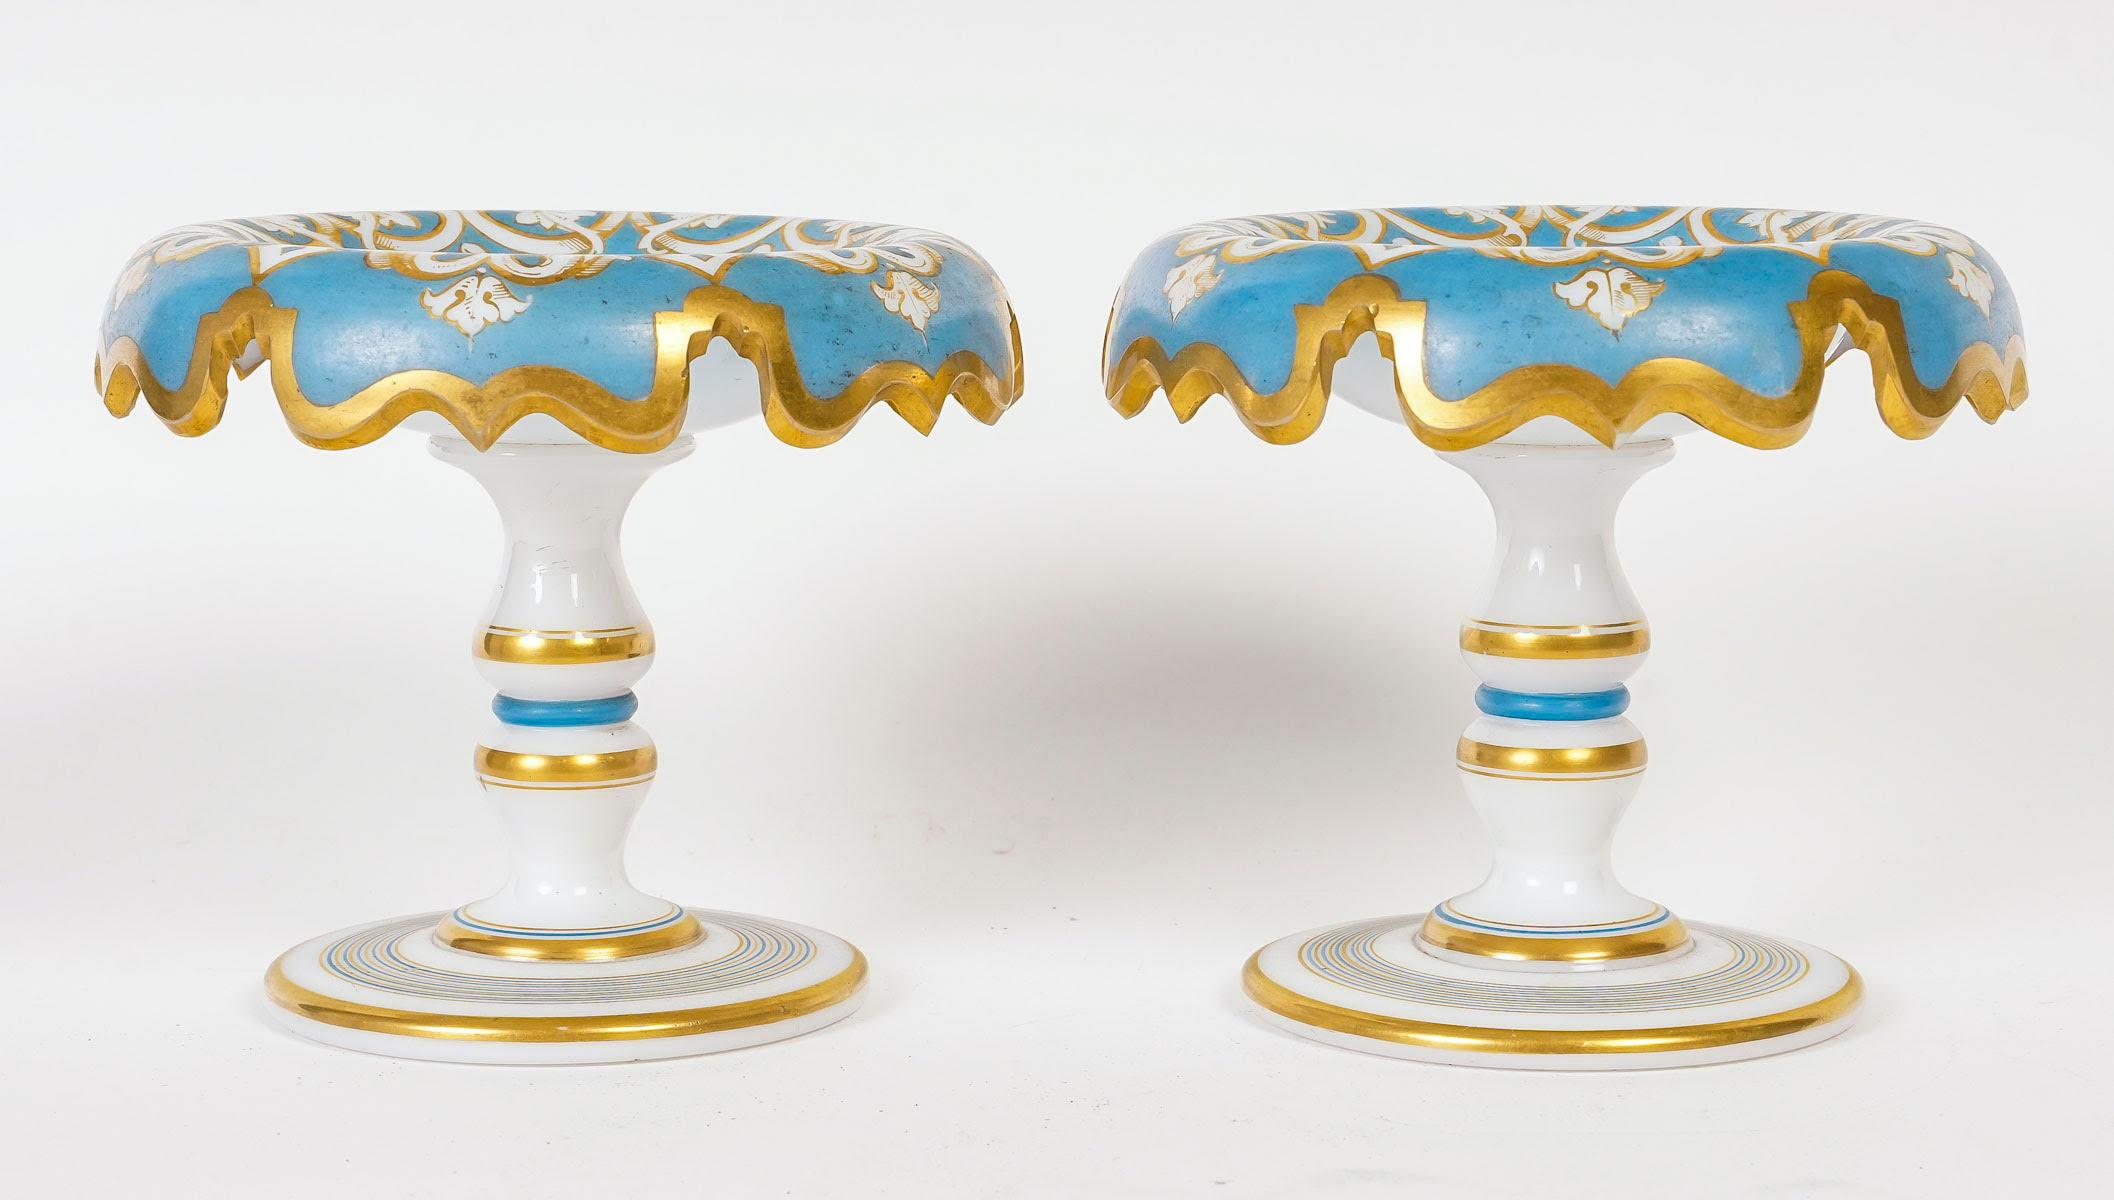 Paar blau-goldene Opalbecher, 19. Jahrhundert, Periode Napoleon III.

Ein Paar blau-goldene Opalbecher aus der Zeit Napoleons III. aus dem 19.
h: 12cm, L: 13cm